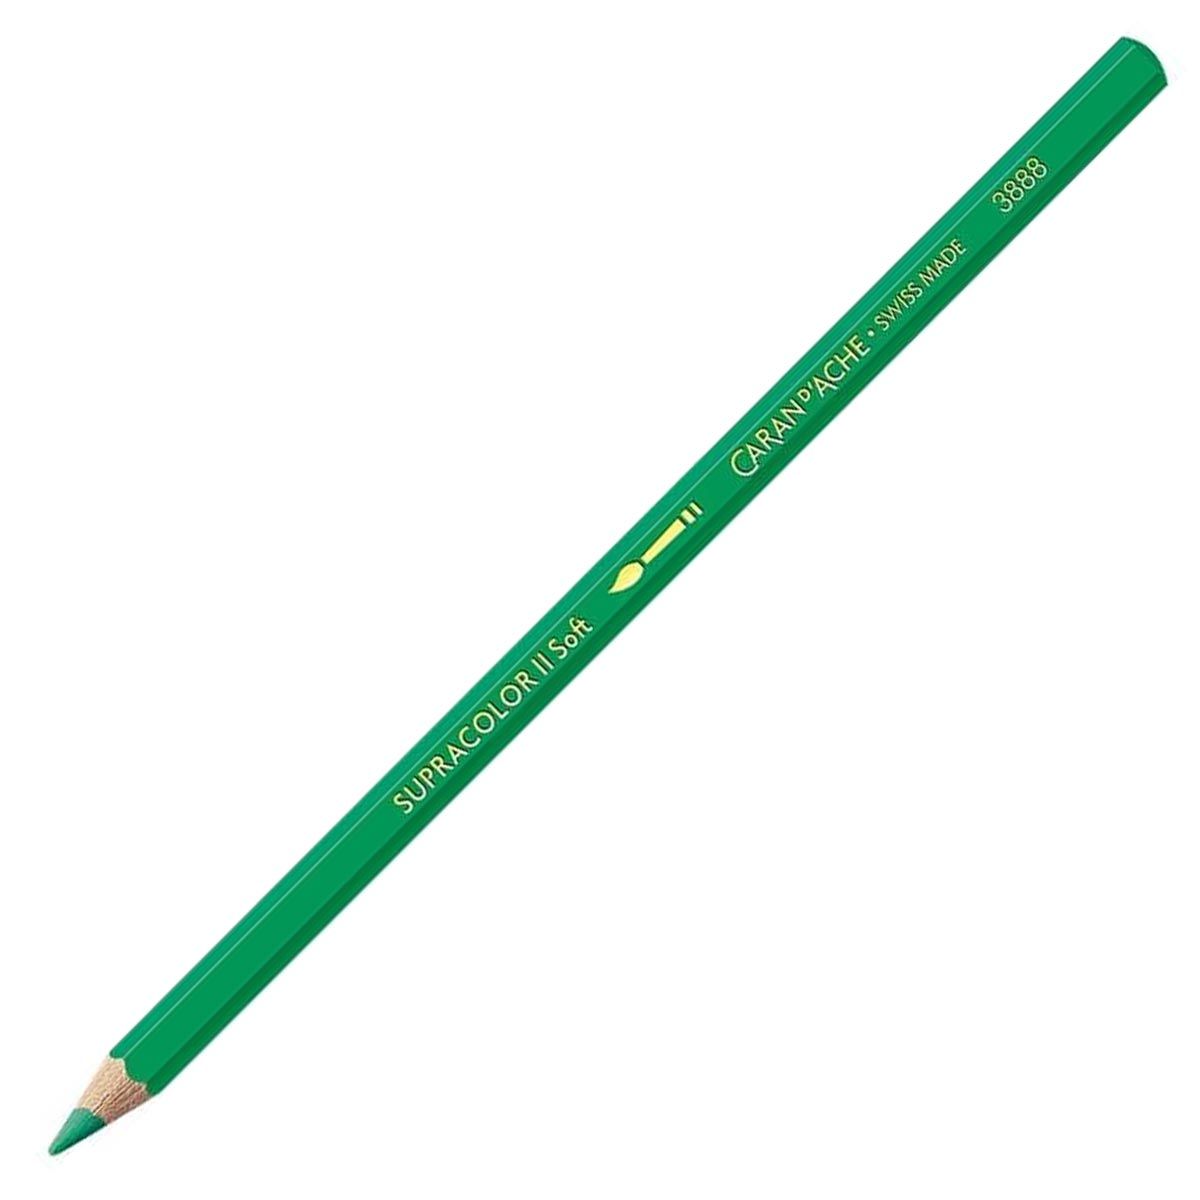 Caran d'Ache Supracolor ll Soft Aquarelle Pencil Peacock Green 460